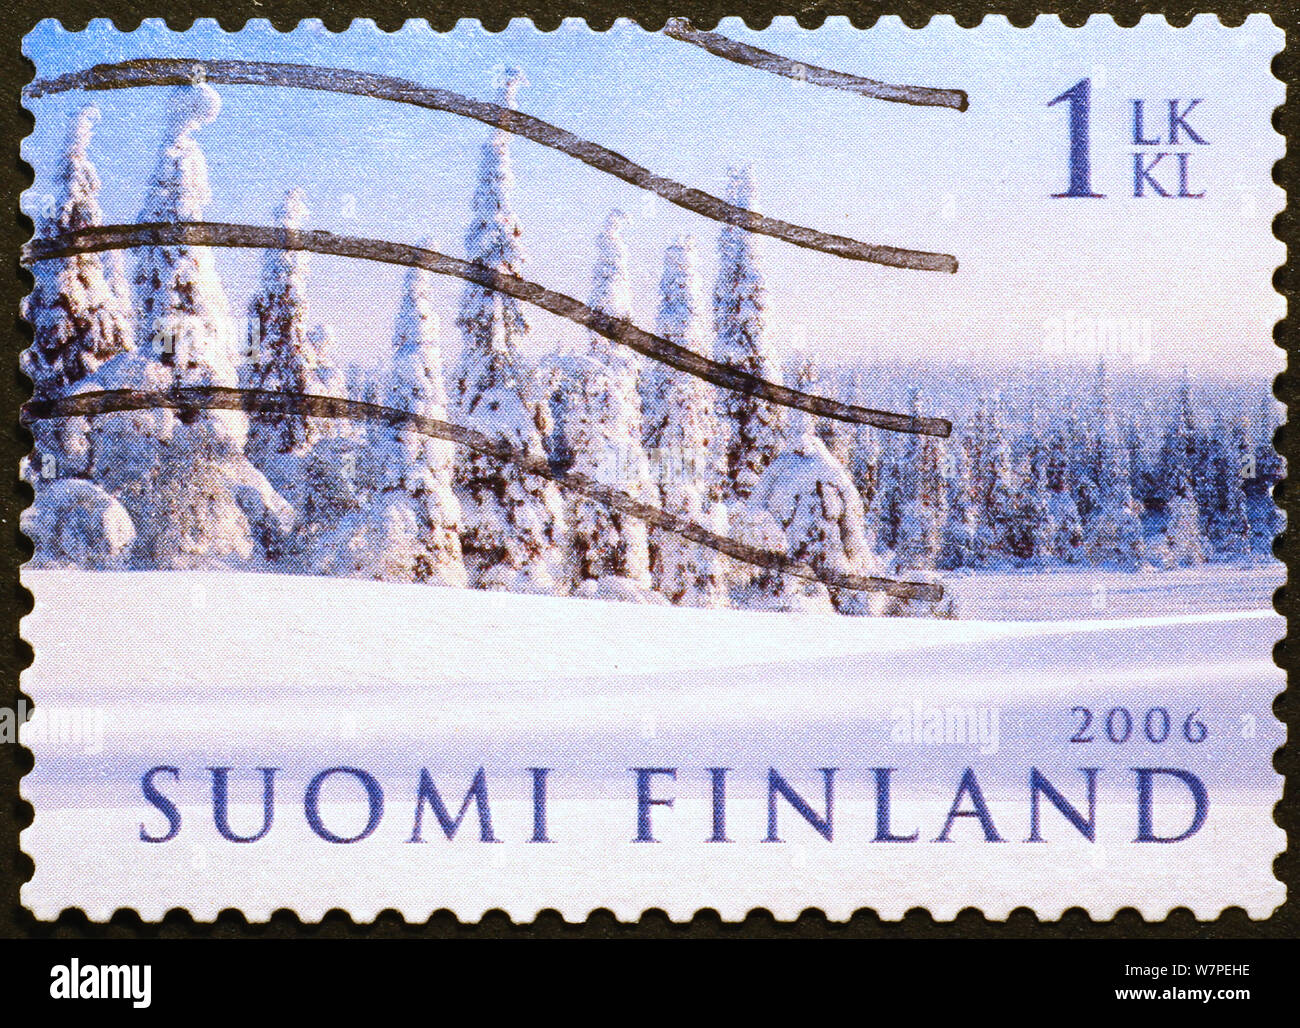 Verschneite Landschaft auf finnische Briefmarke Stockfoto